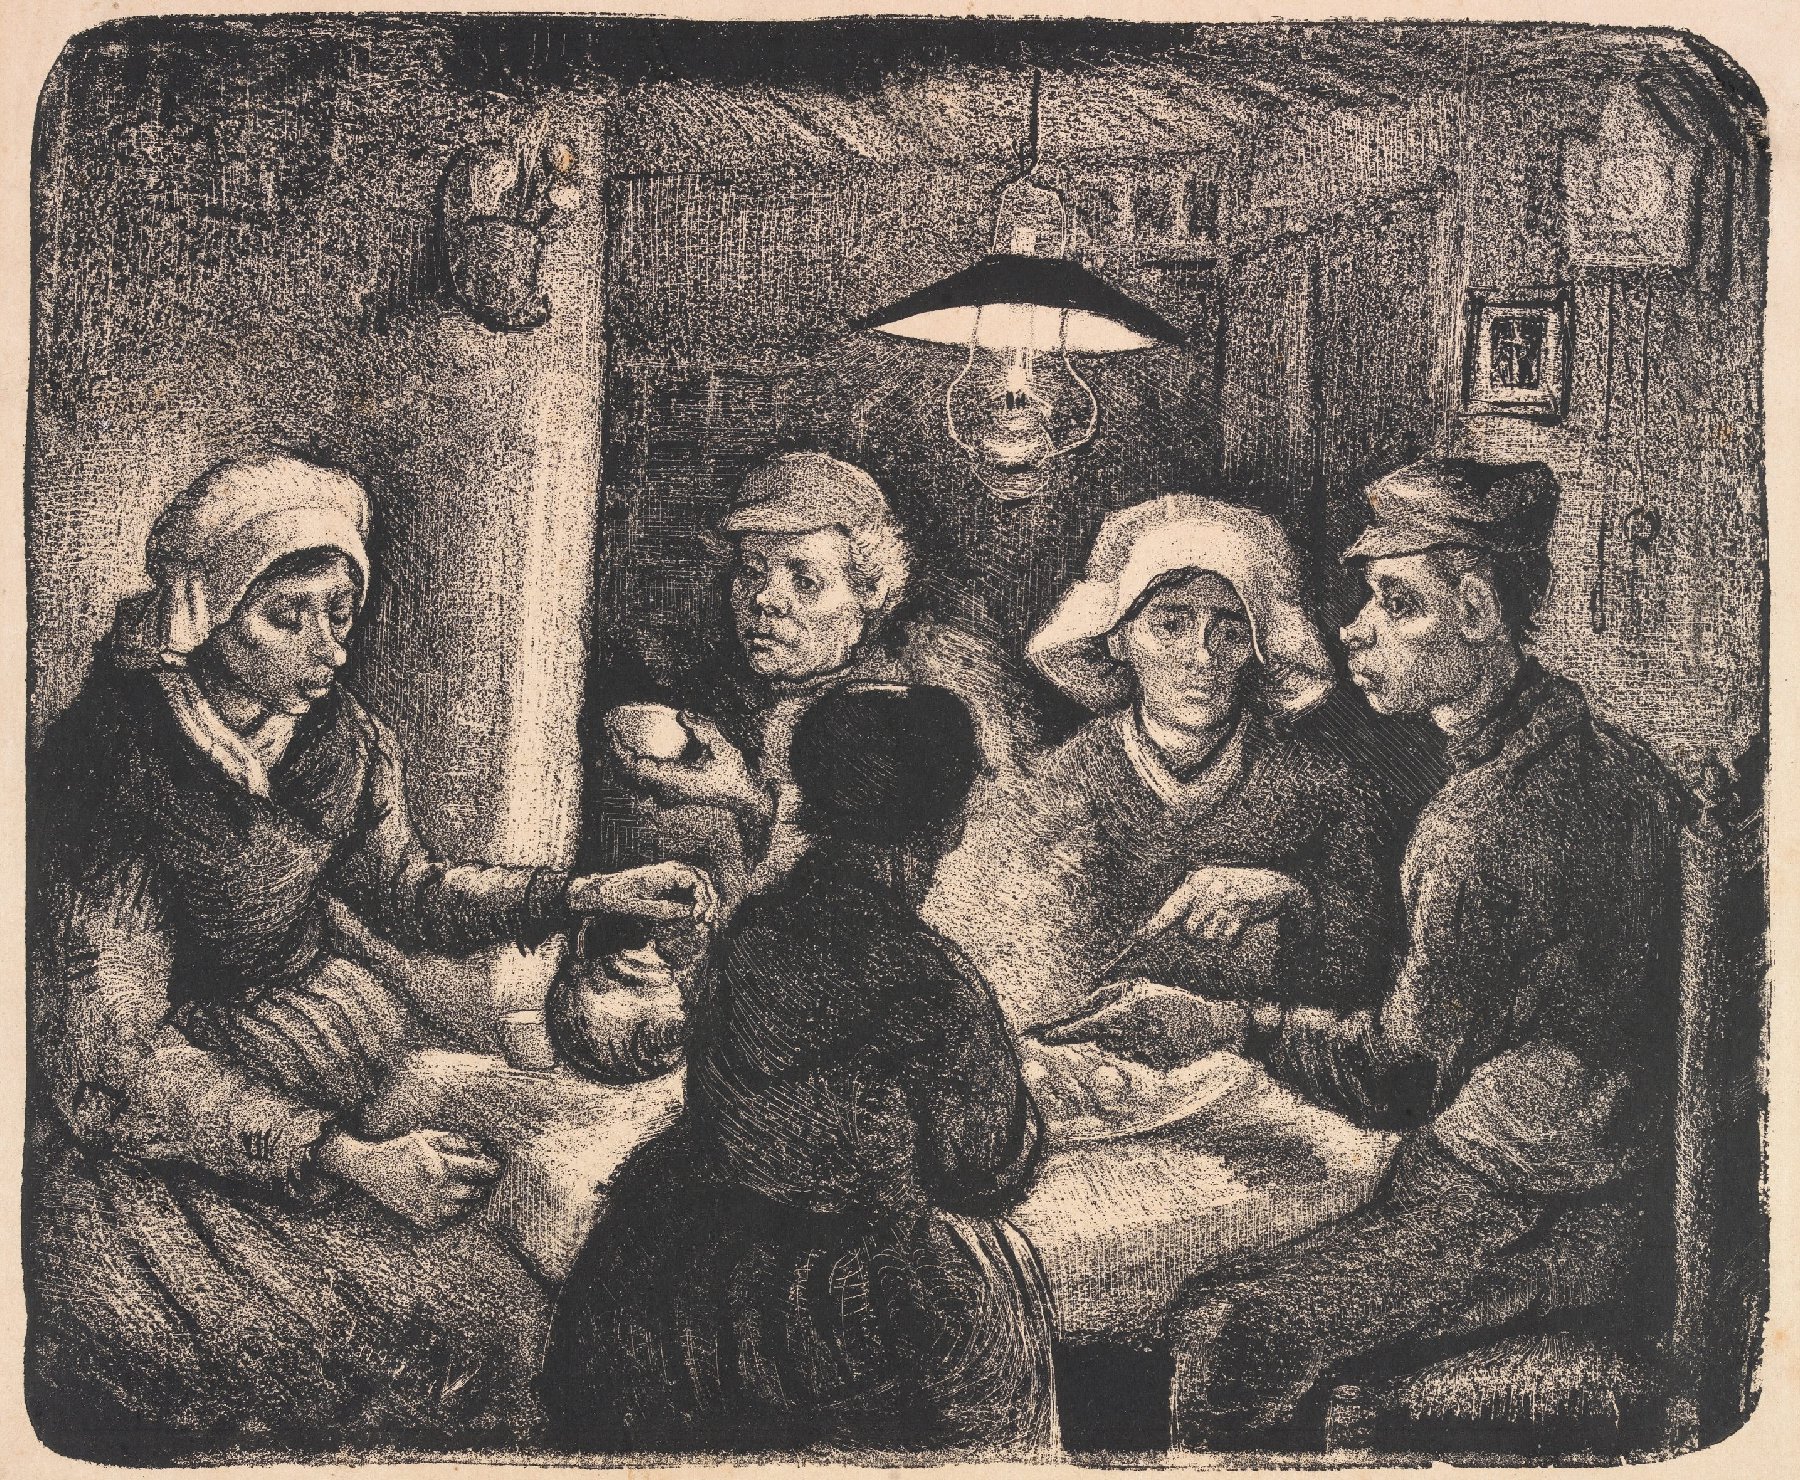 De aardappeleters Vincent van Gogh (1853 - 1890), Nuenen, april 1885